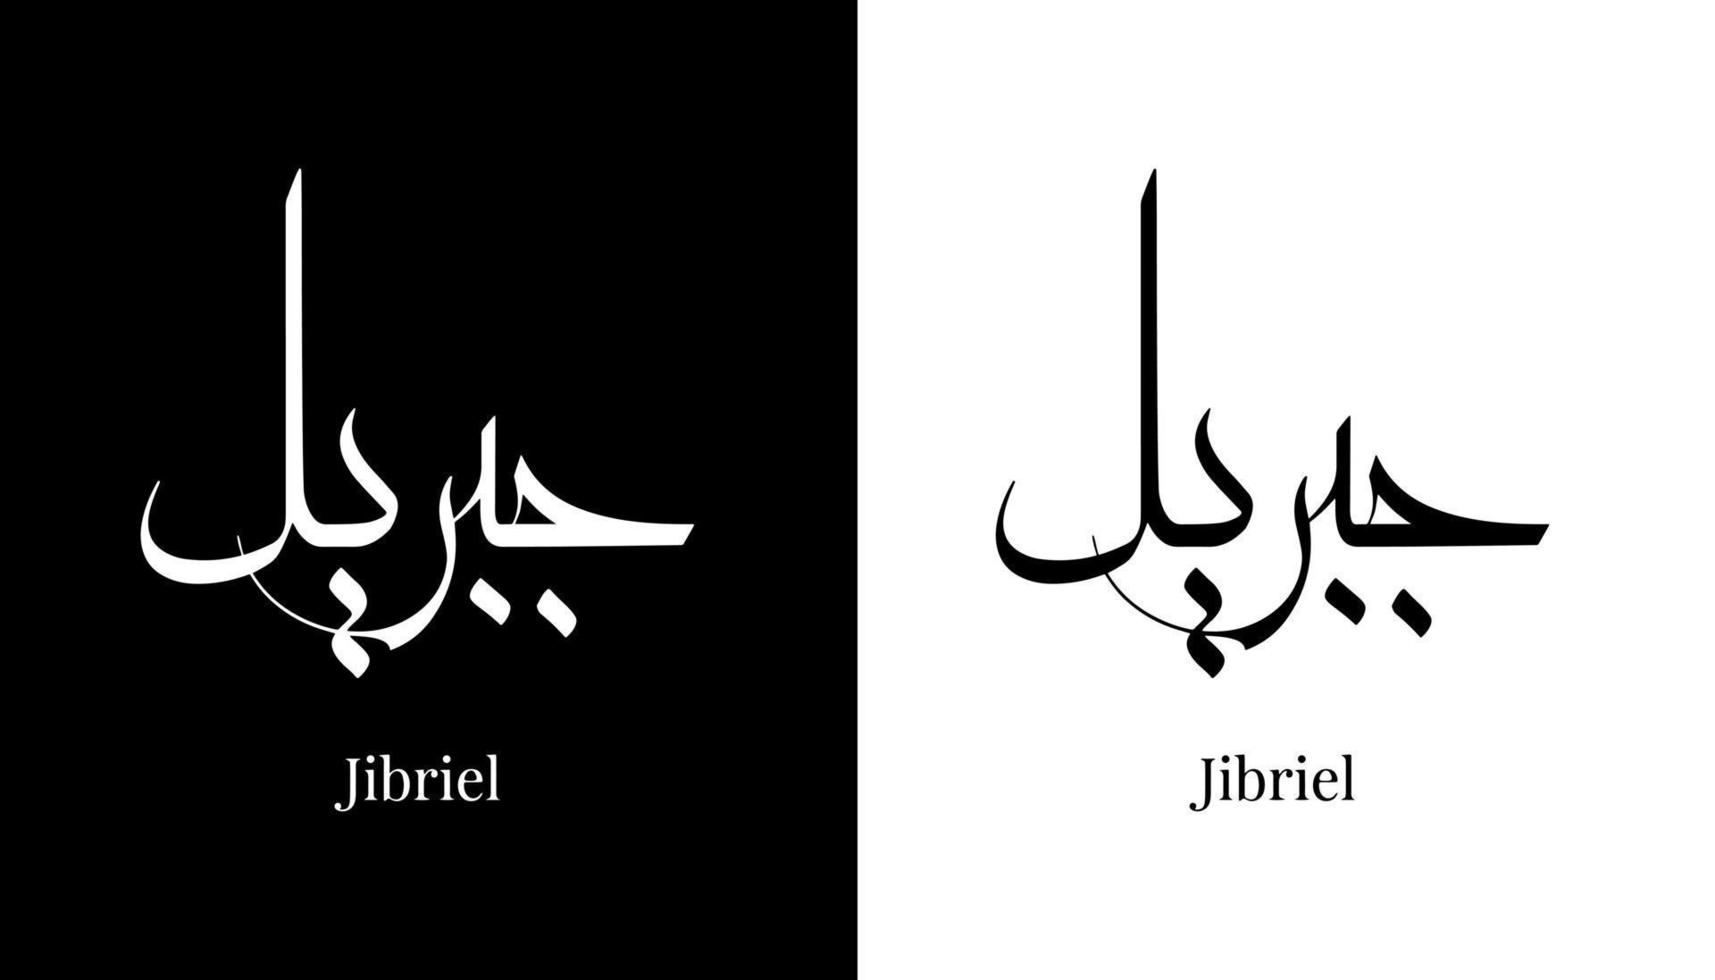 nome de caligrafia árabe traduzido 'jibriel' letras árabes alfabeto fonte letras ilustração em vetor logotipo islâmico